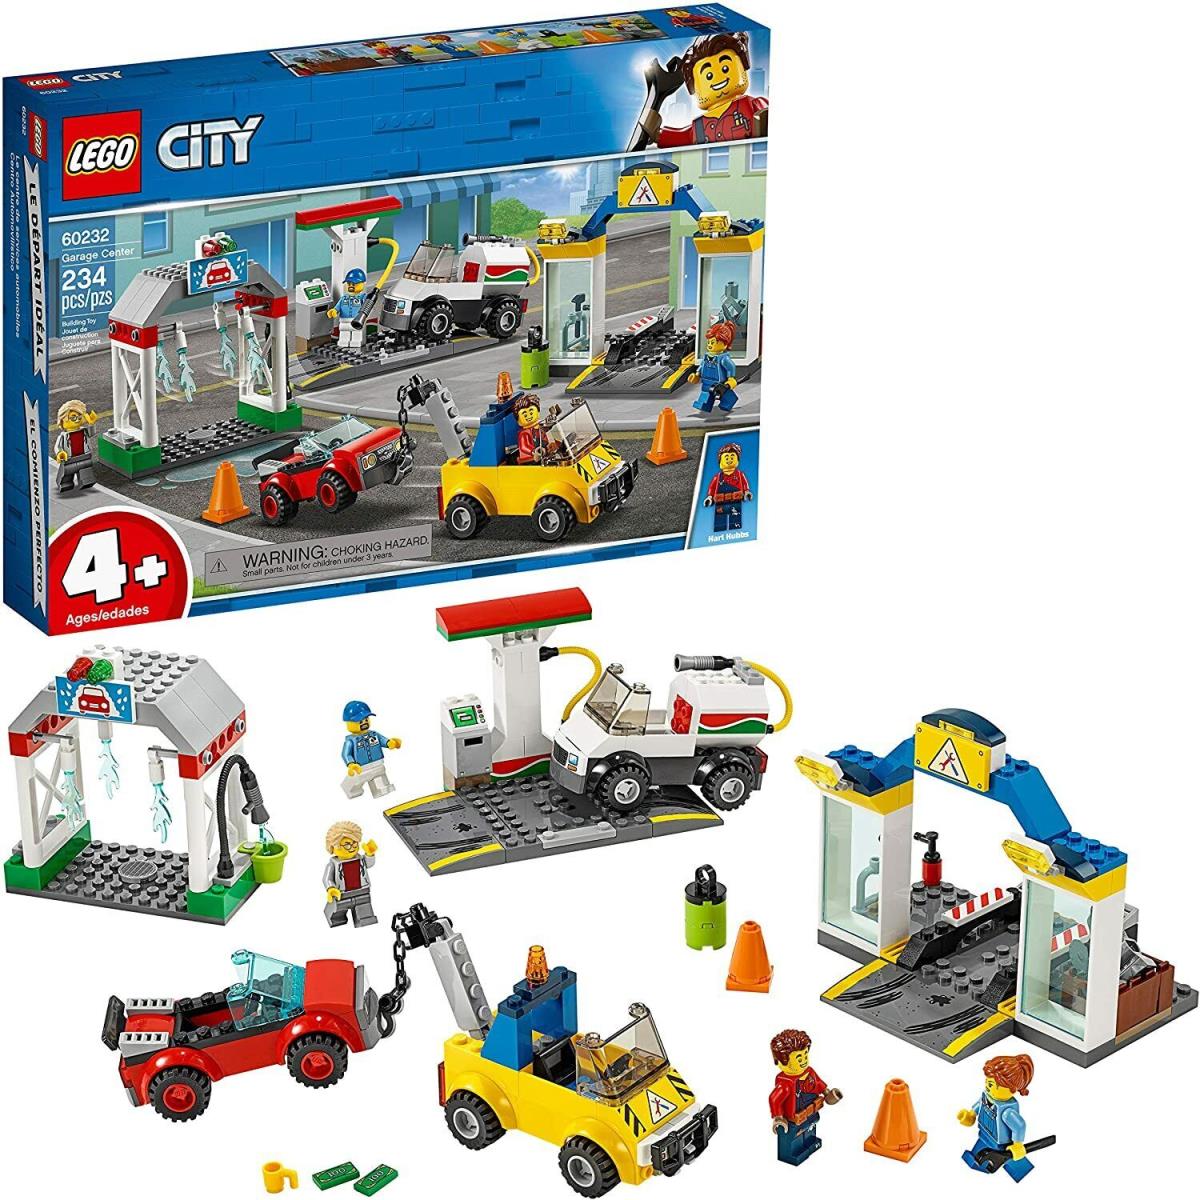 Lego City Garage Center Building Play Set 60232